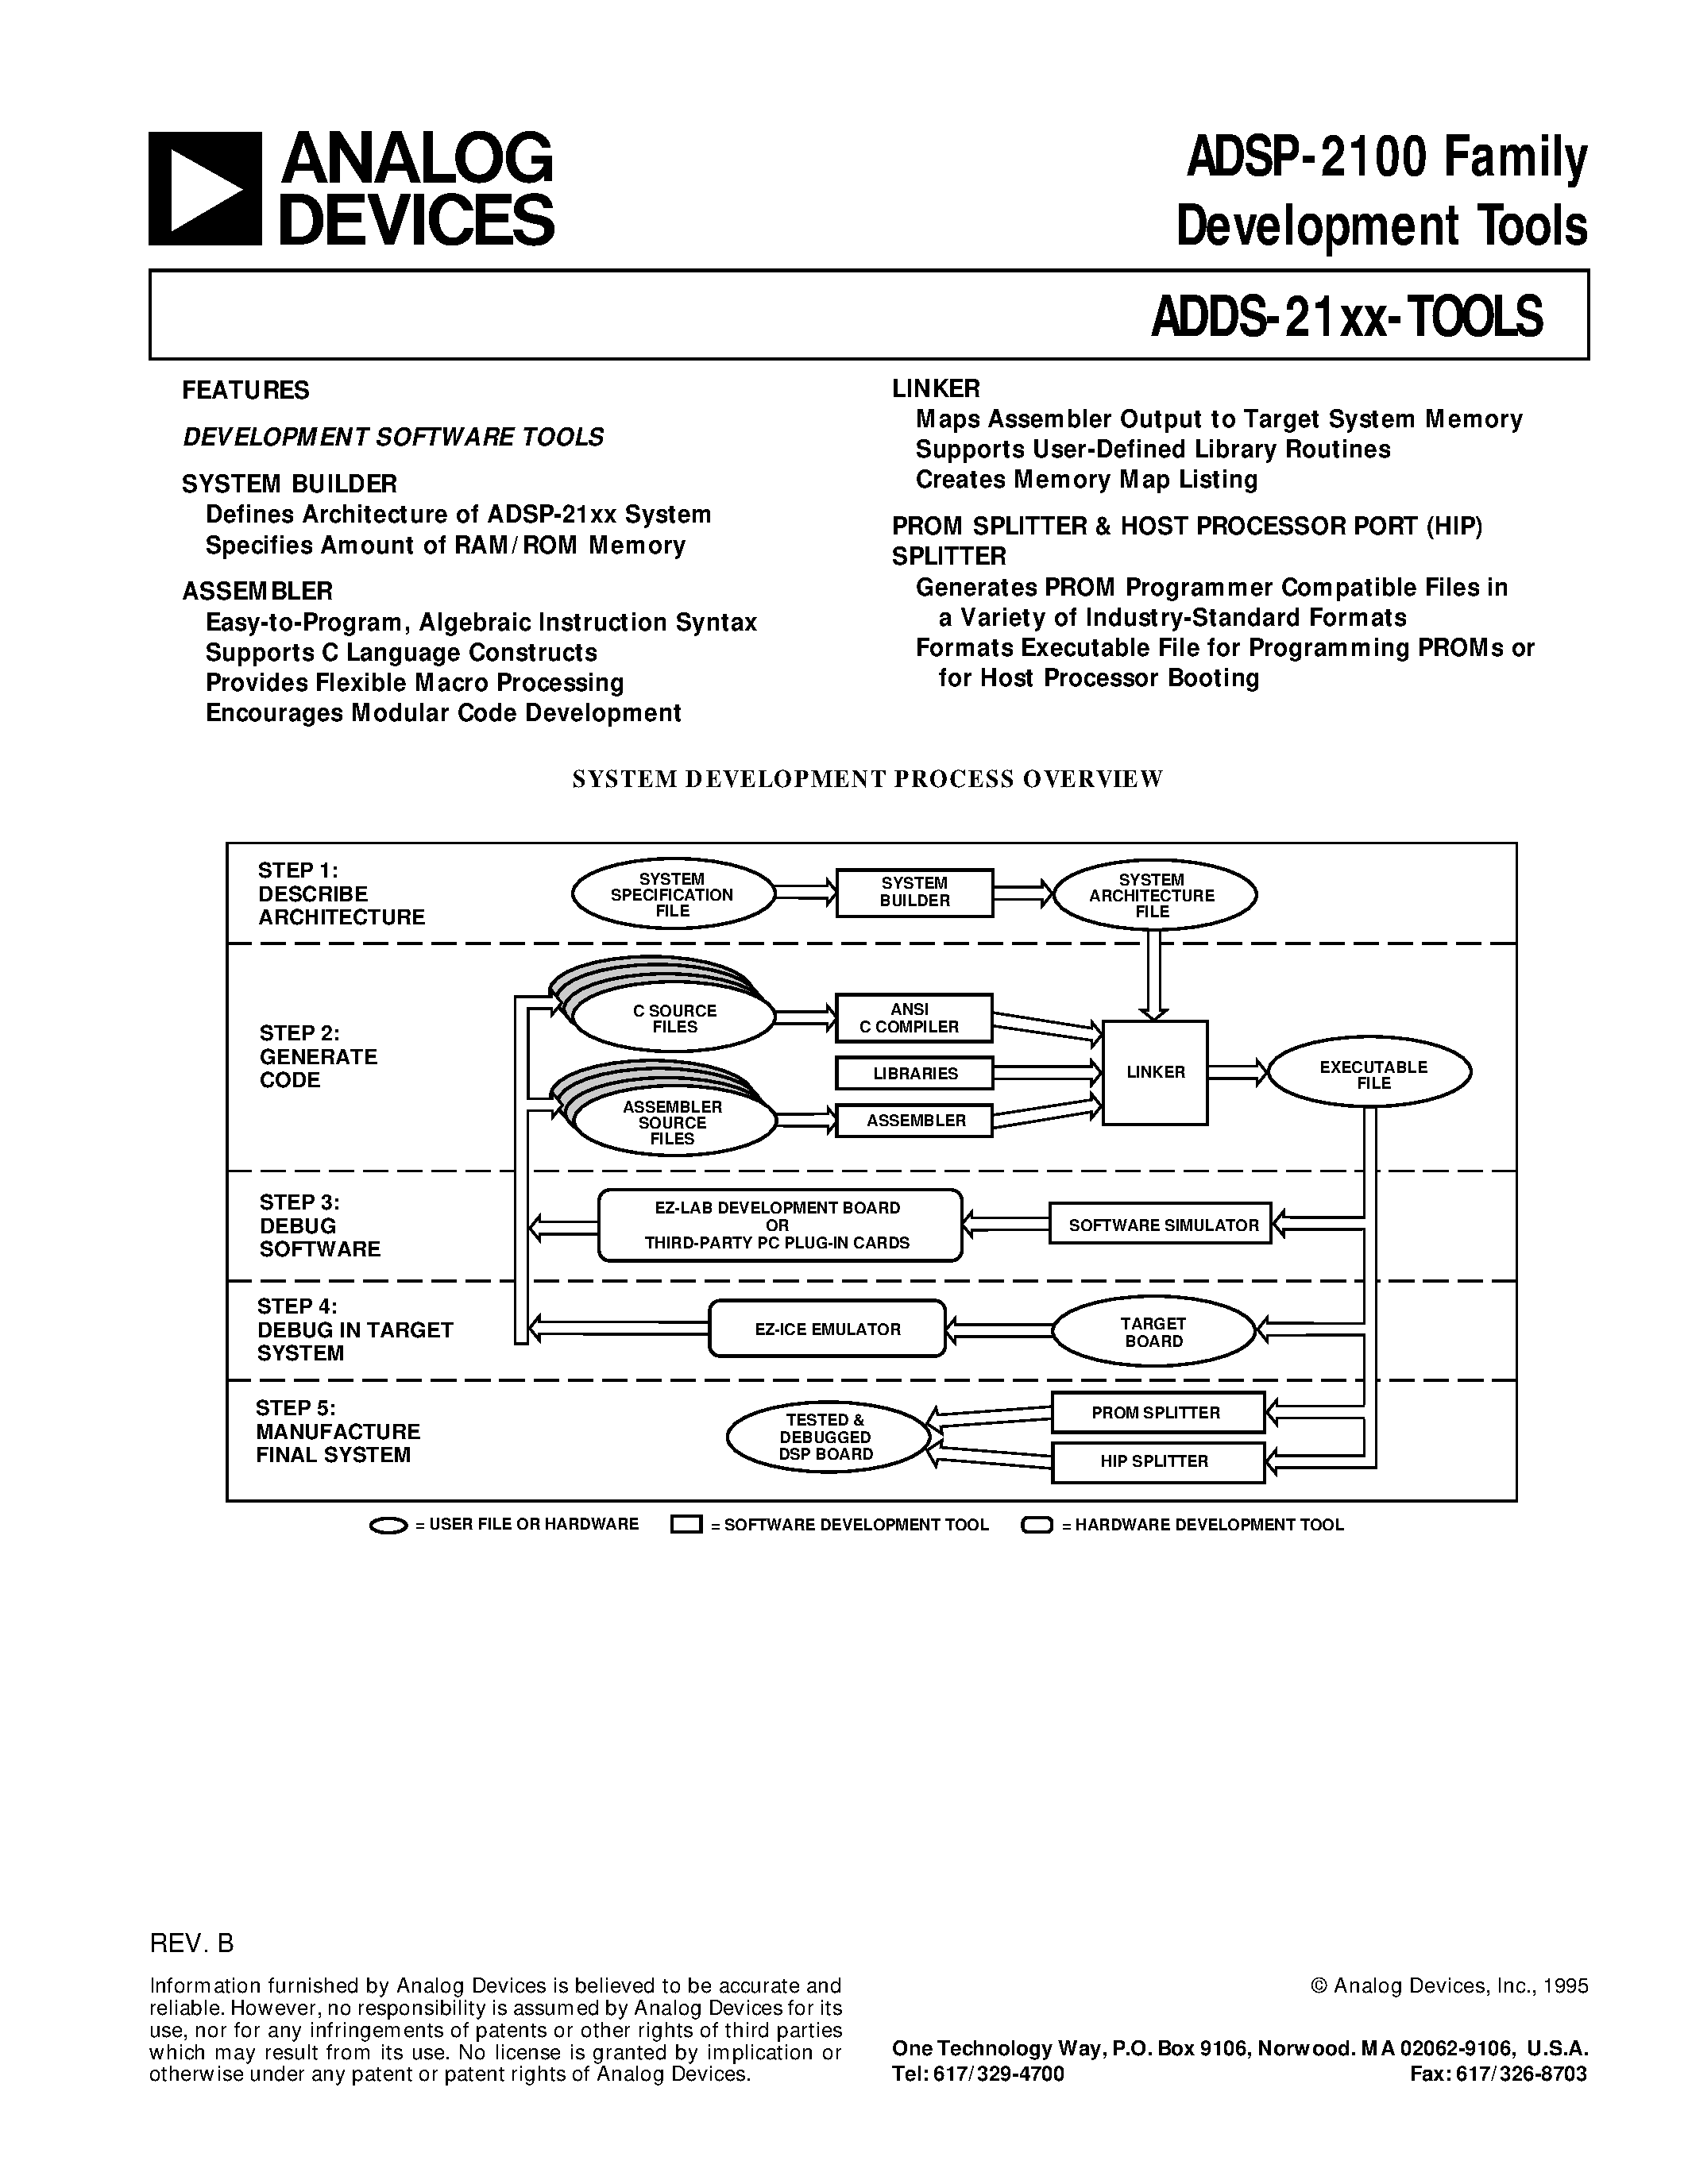 Даташит ADDS-2101-EZ-LAB - ADSP-2100 Family Development Tools страница 1